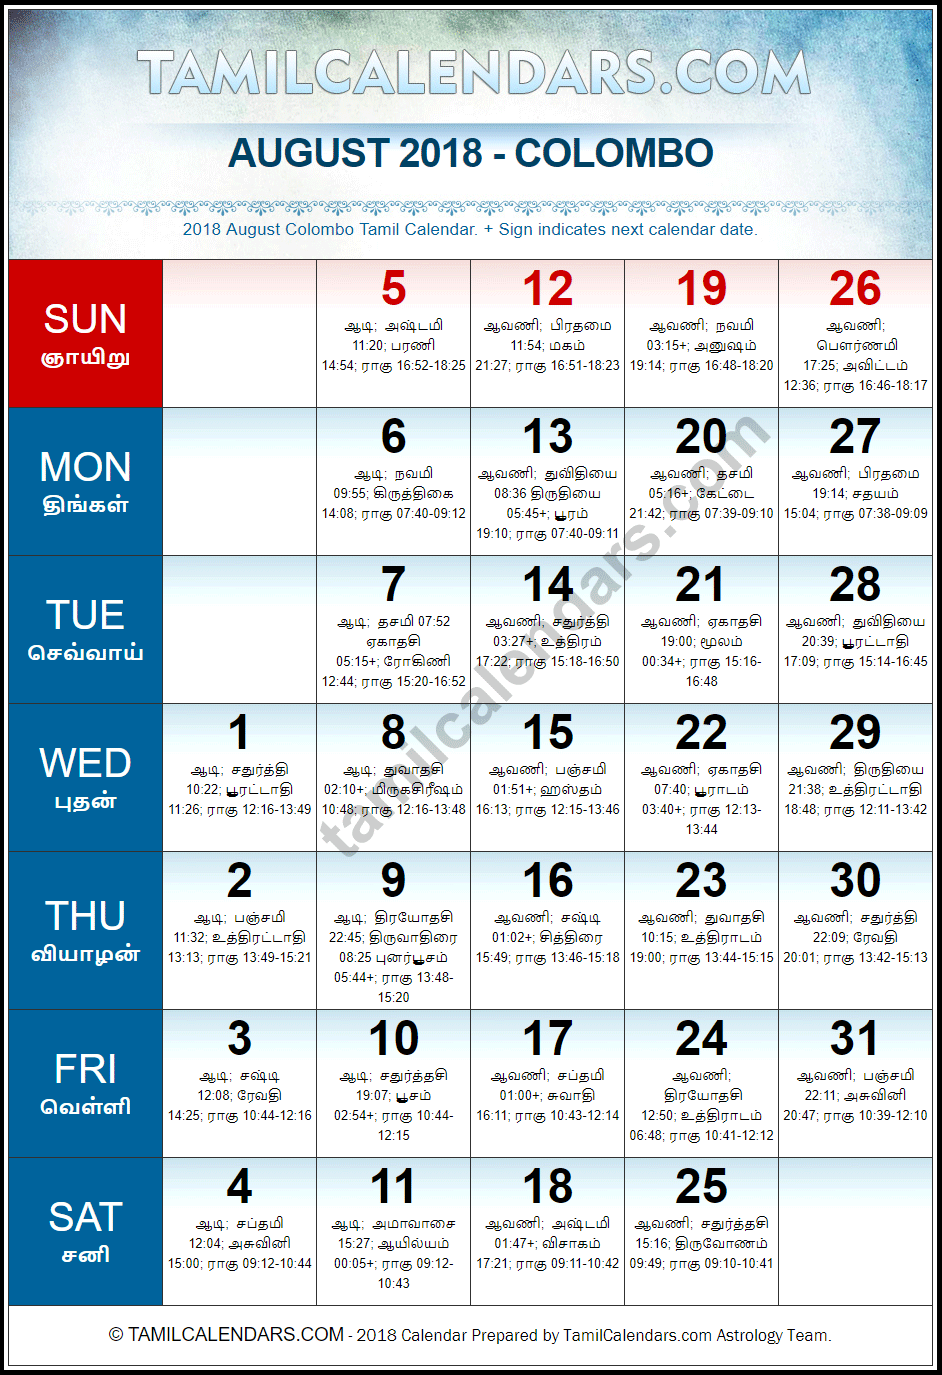 August 2018 Tamil Calendar for Sri Lanka (Colombo)